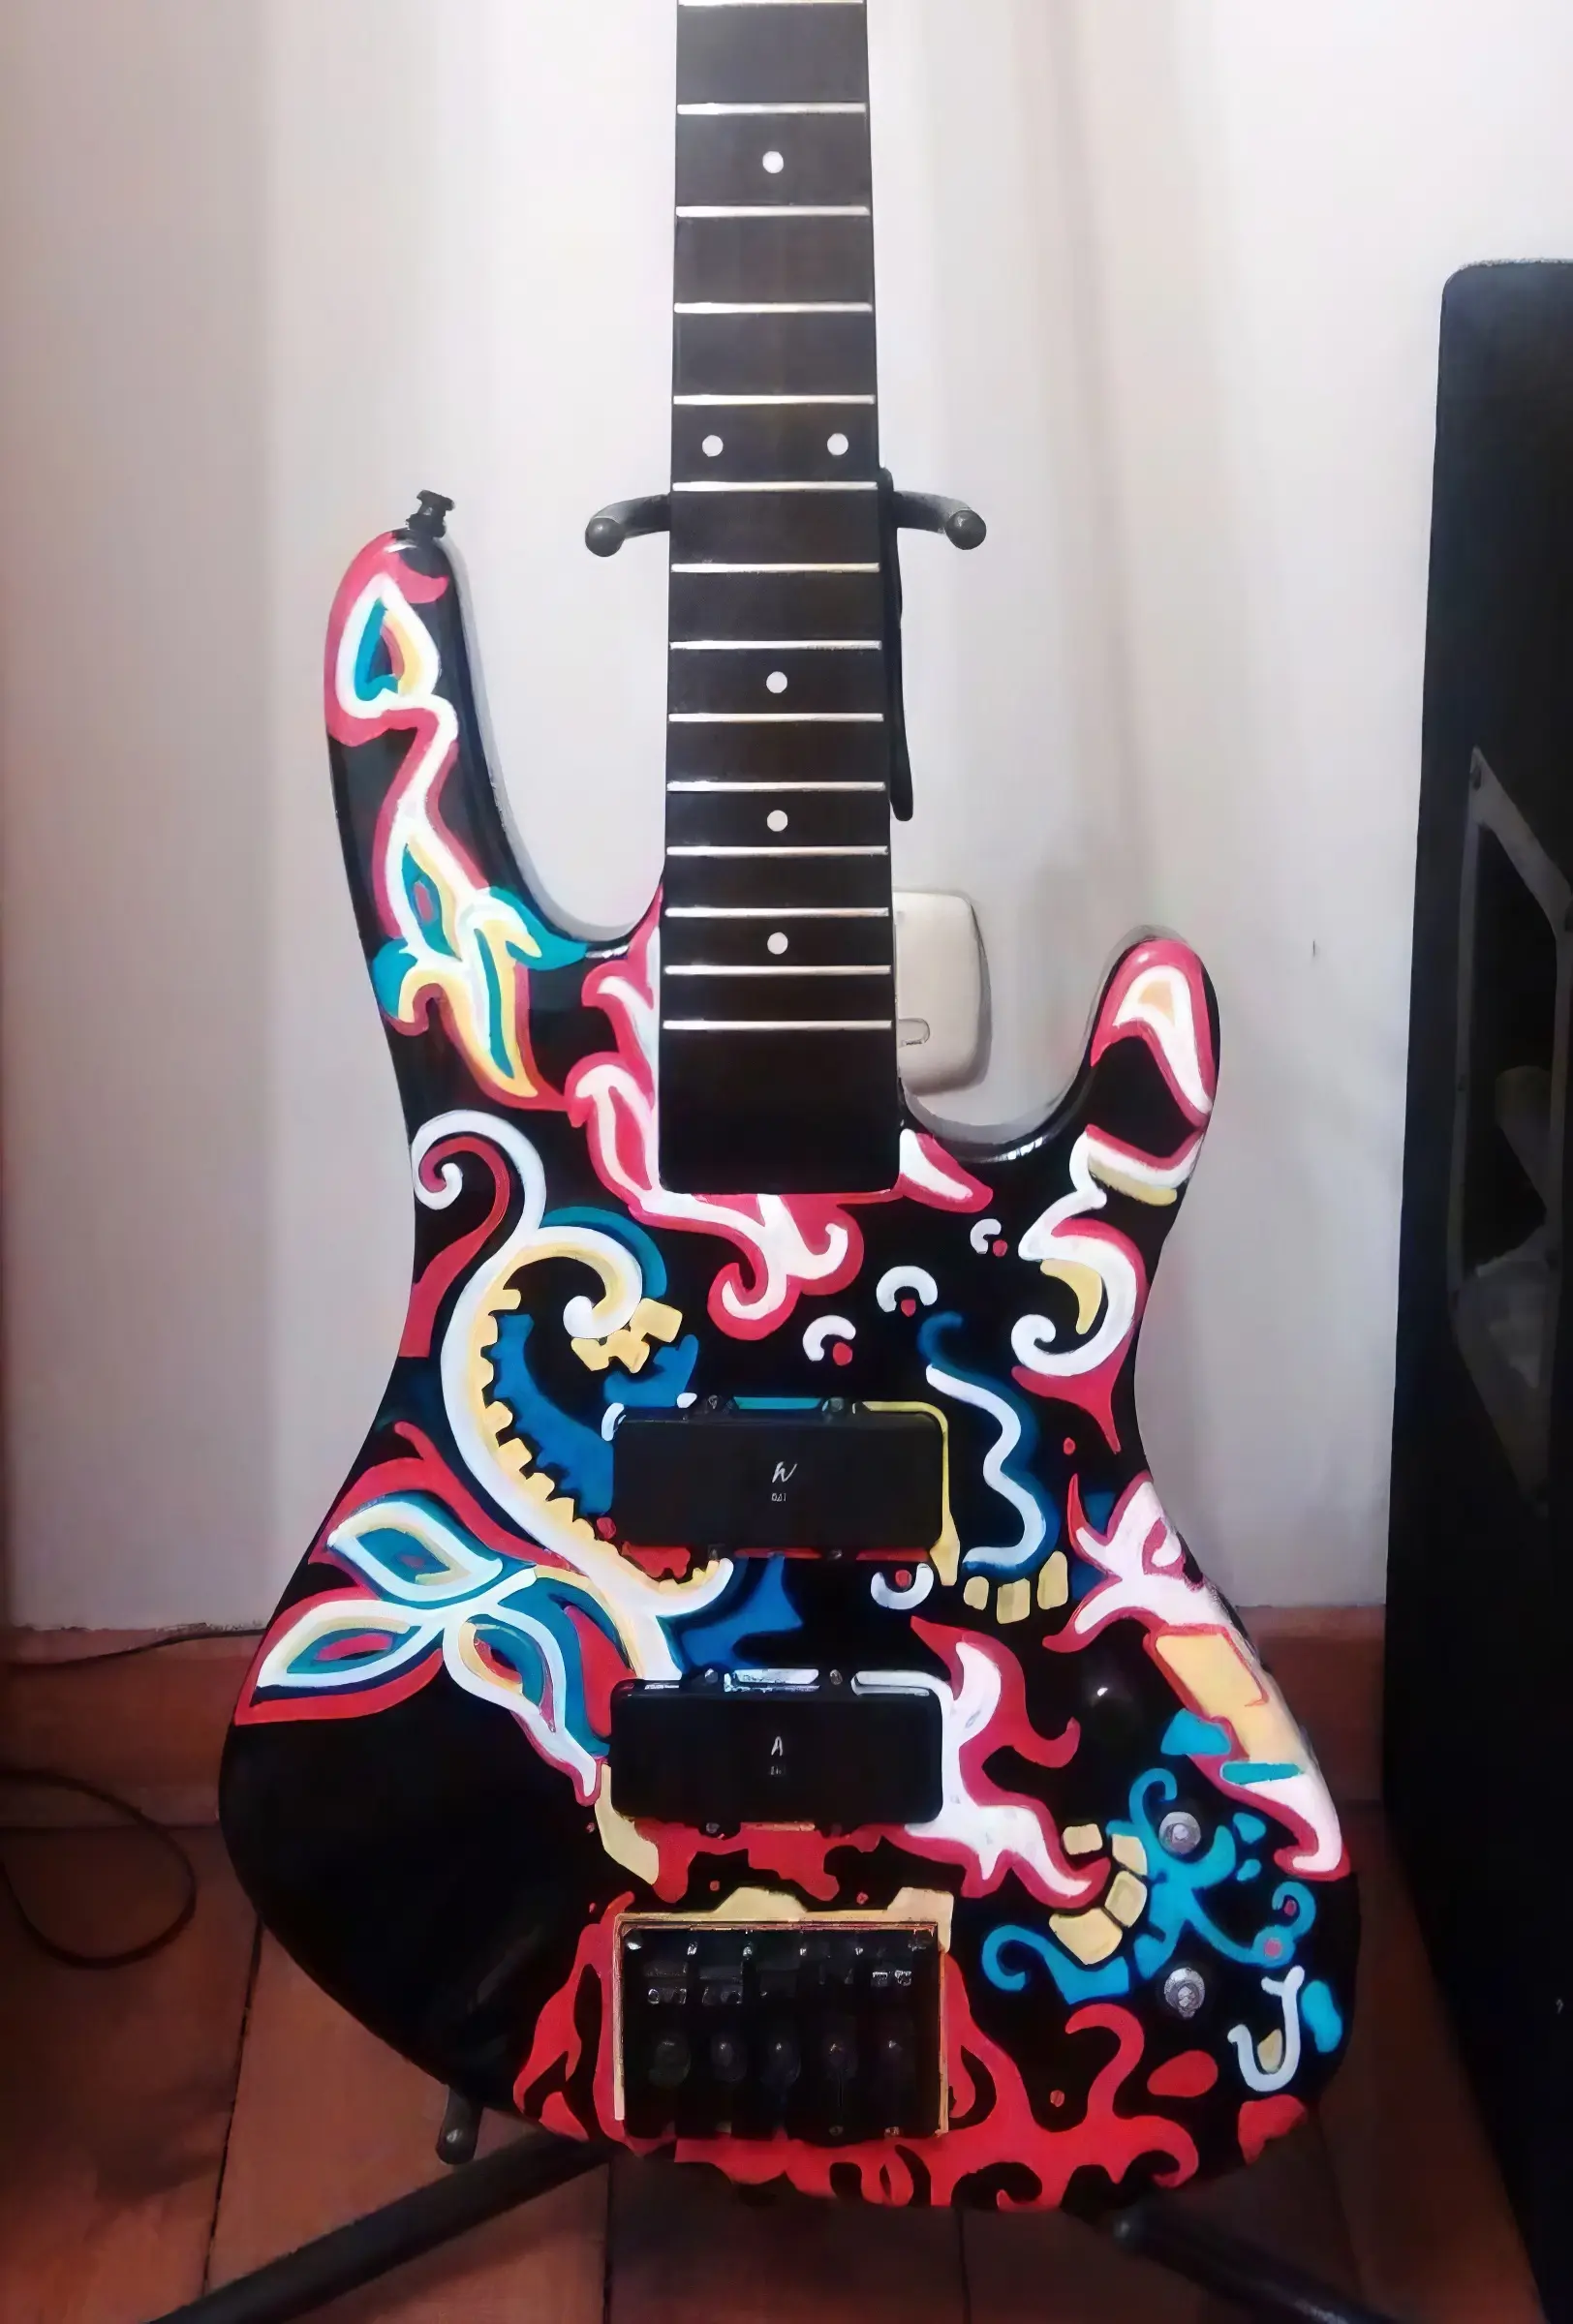 Inspiracja Hendrixowym Gibsonem Flying V gitara washburn xb125